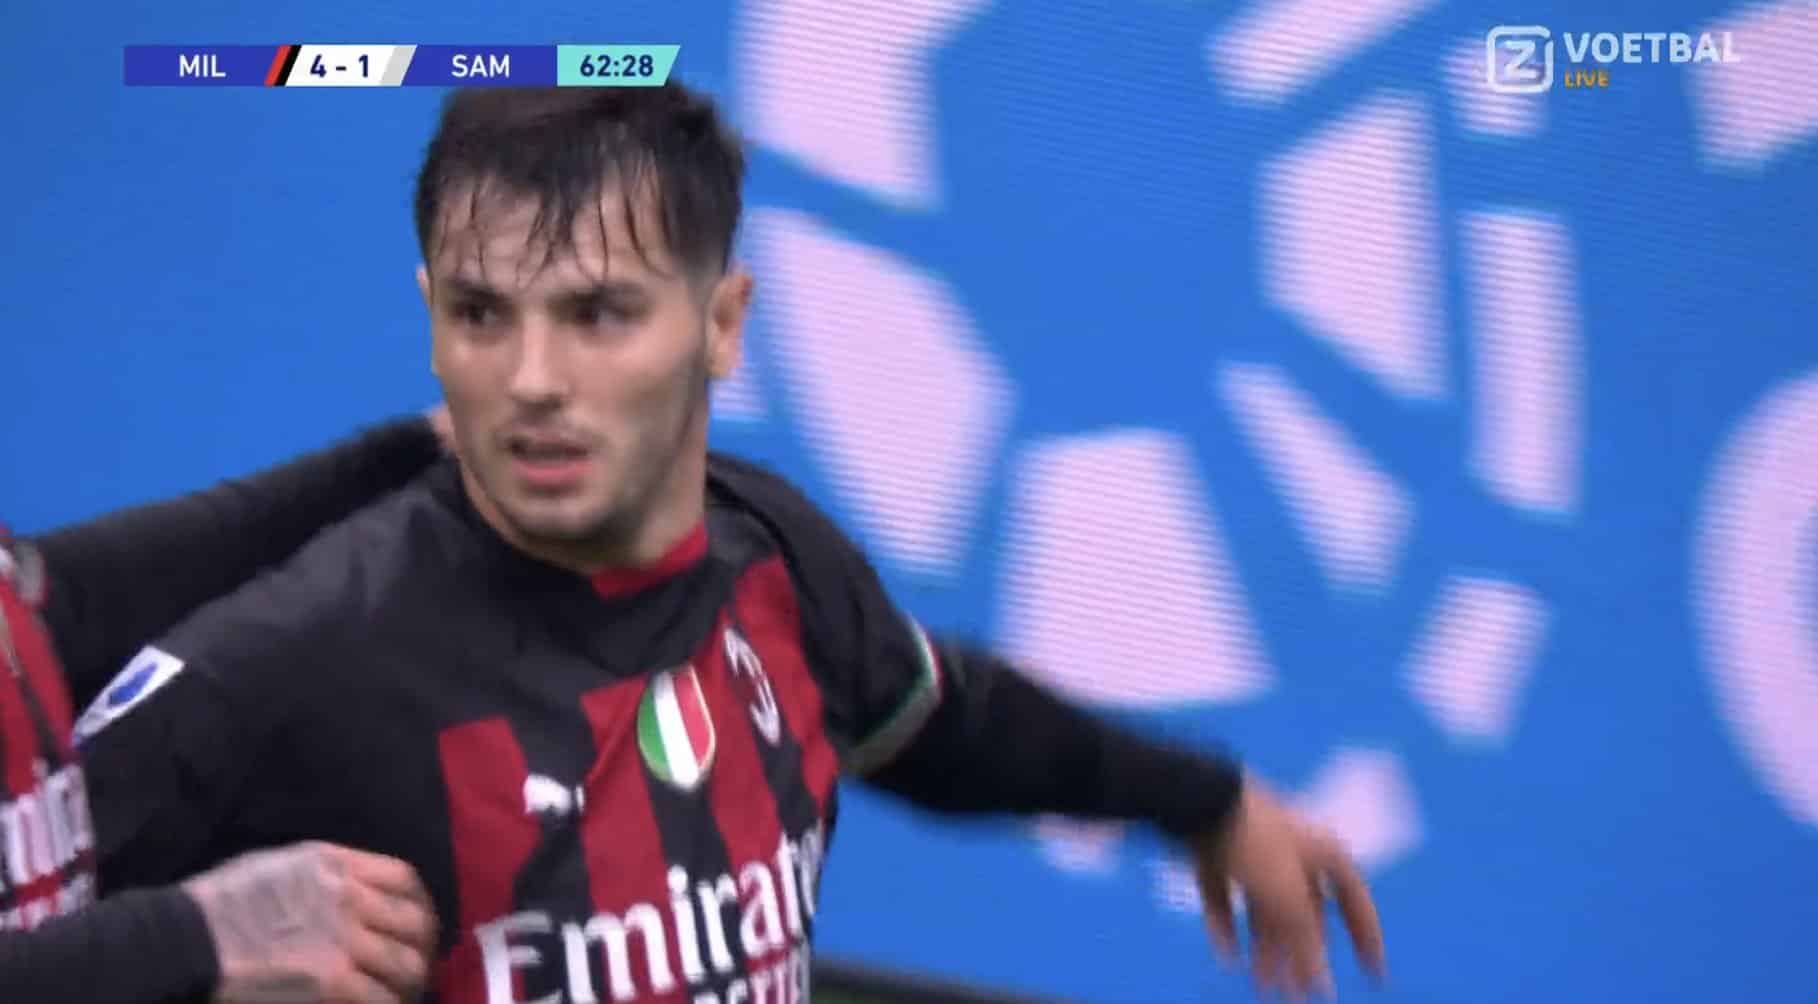 Diaz enfonce Sampdoria, 4-1 pour Milan (VIDÉO)